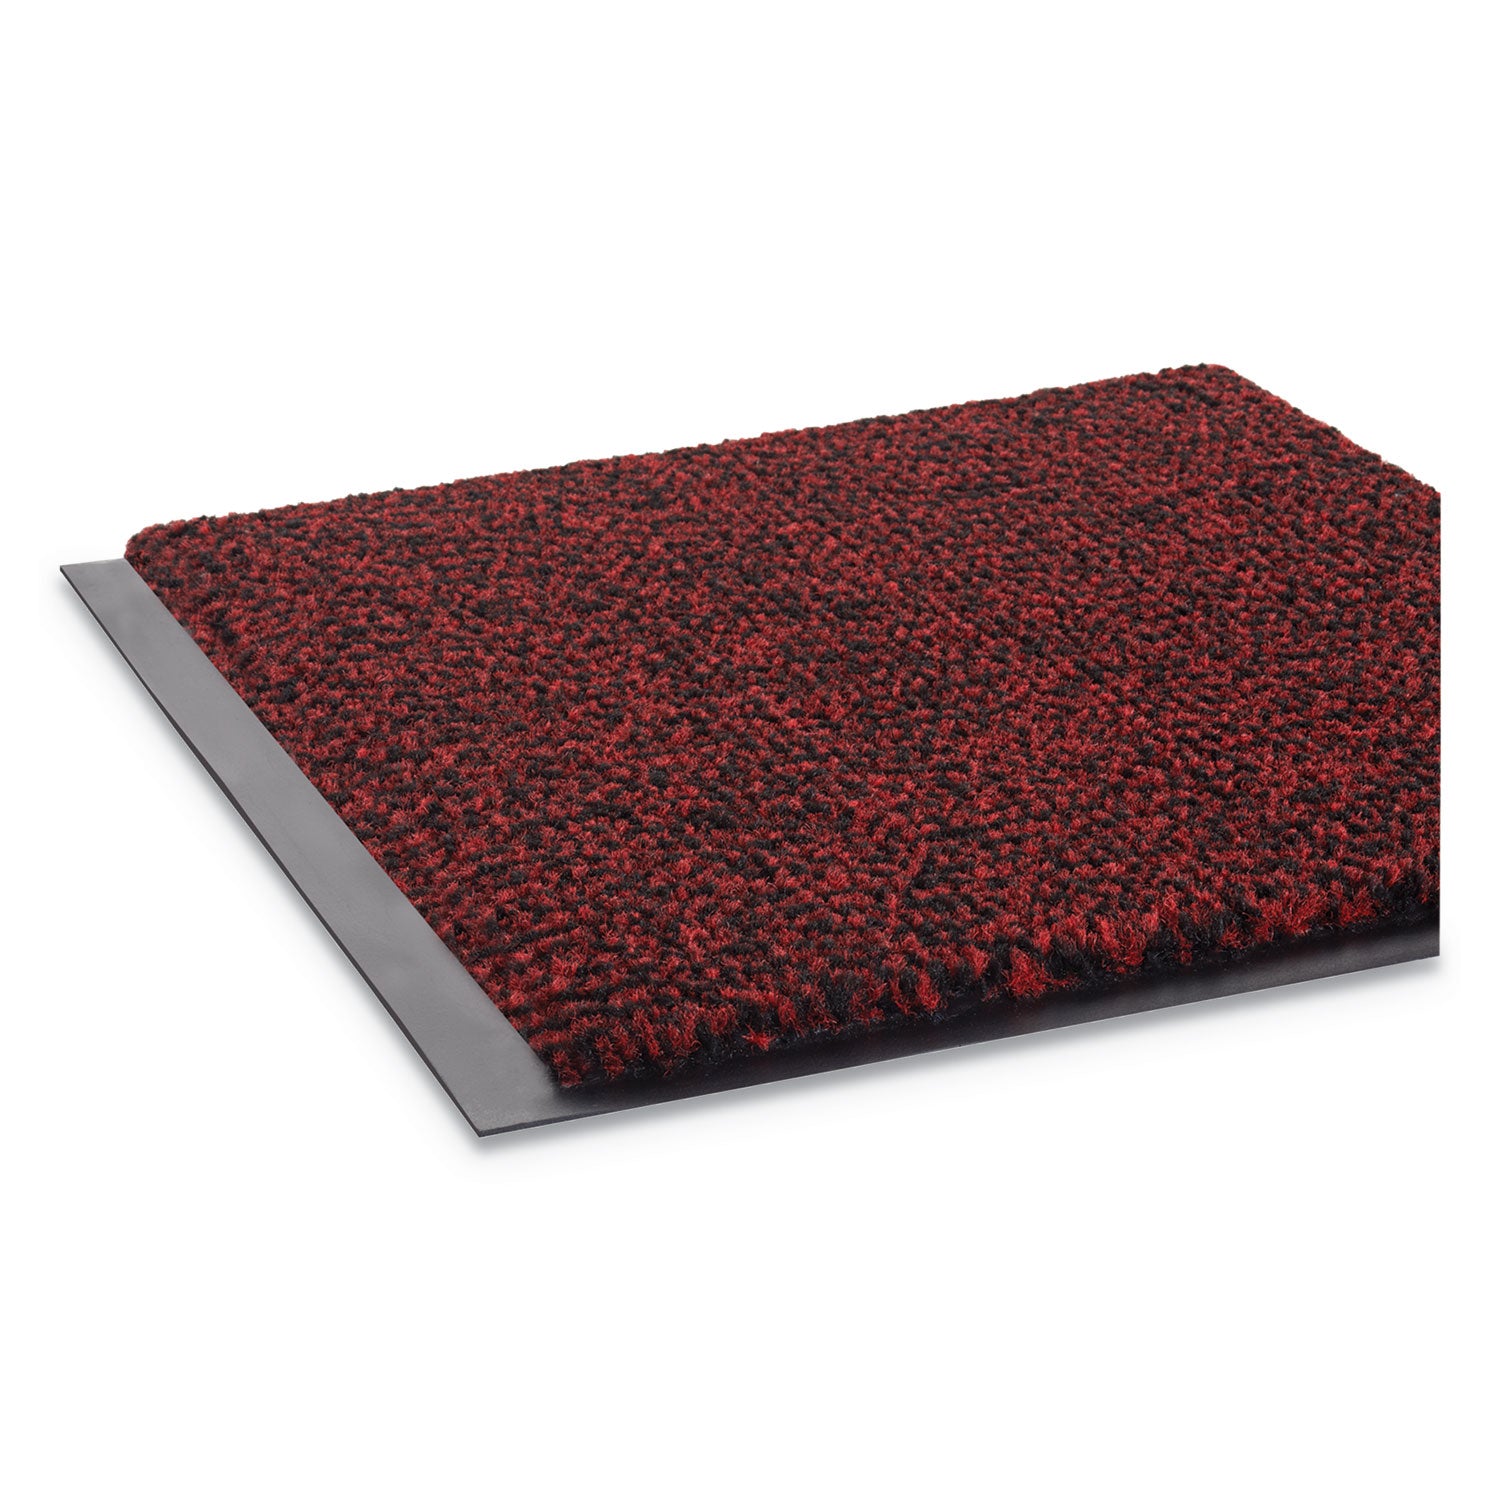 Dust-Star Microfiber Wiper Mat, 36 x 60, Red - 